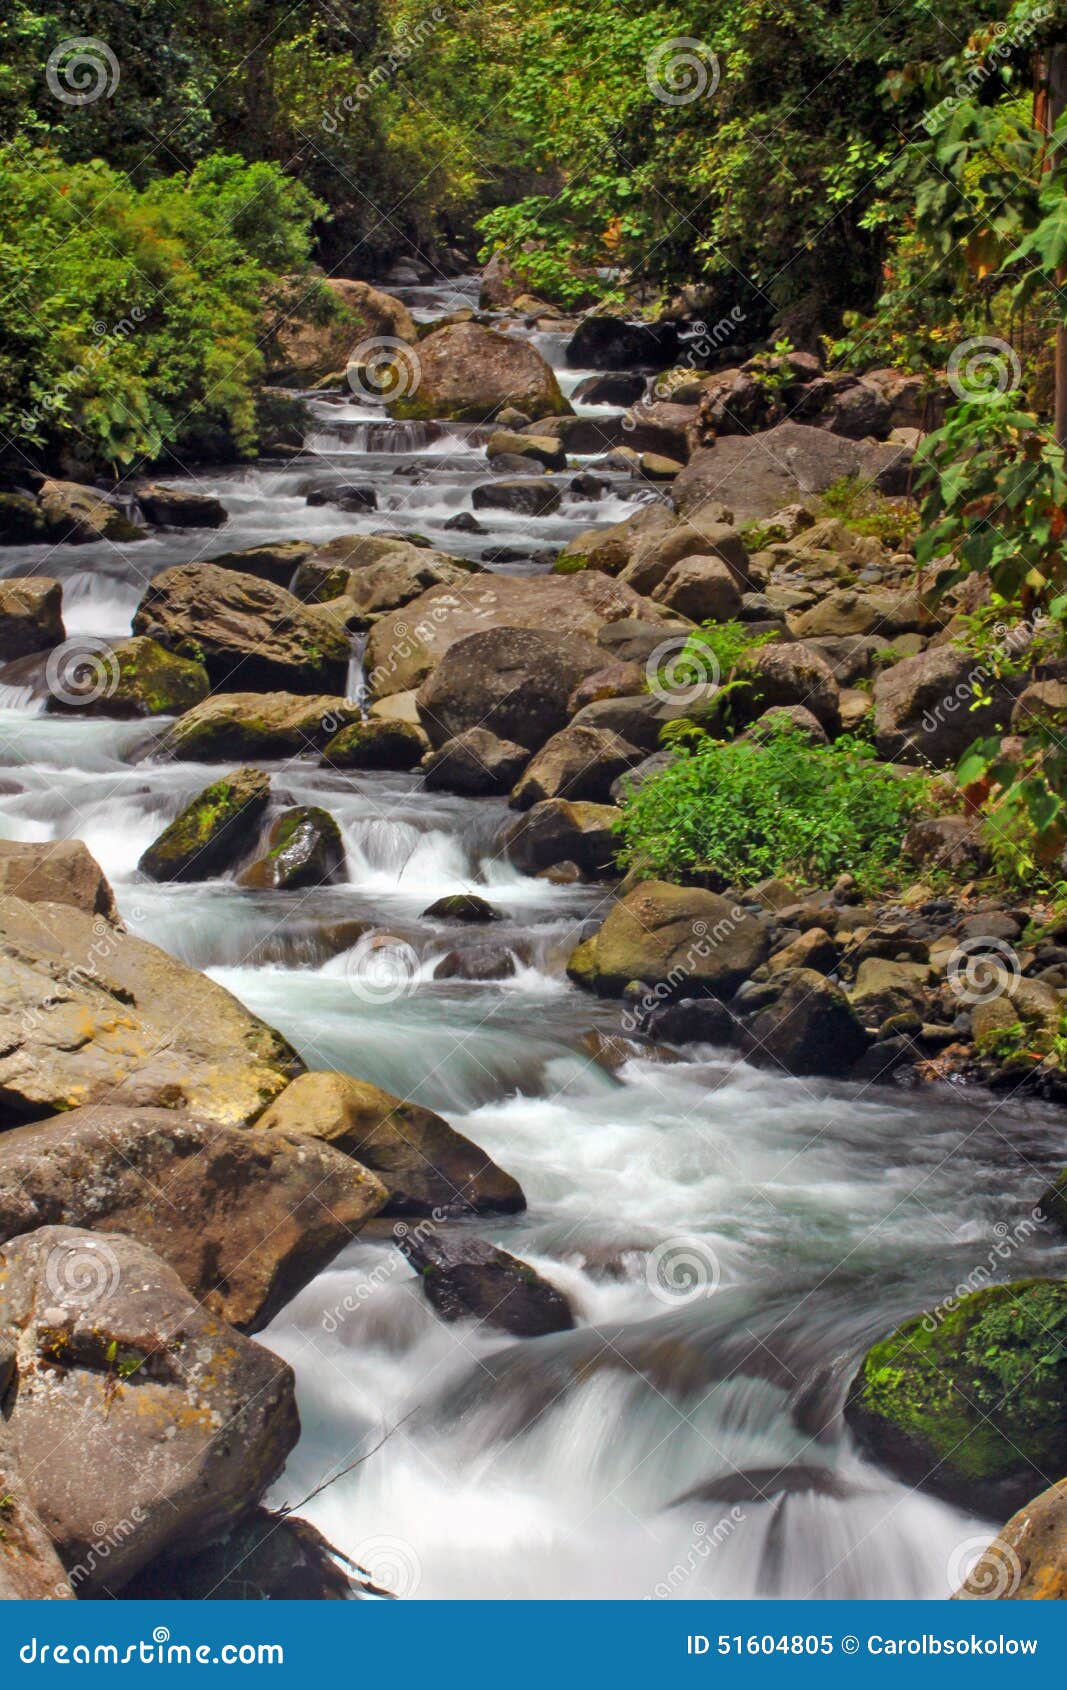 caldera river rapids, boquete, chiriqui, panama